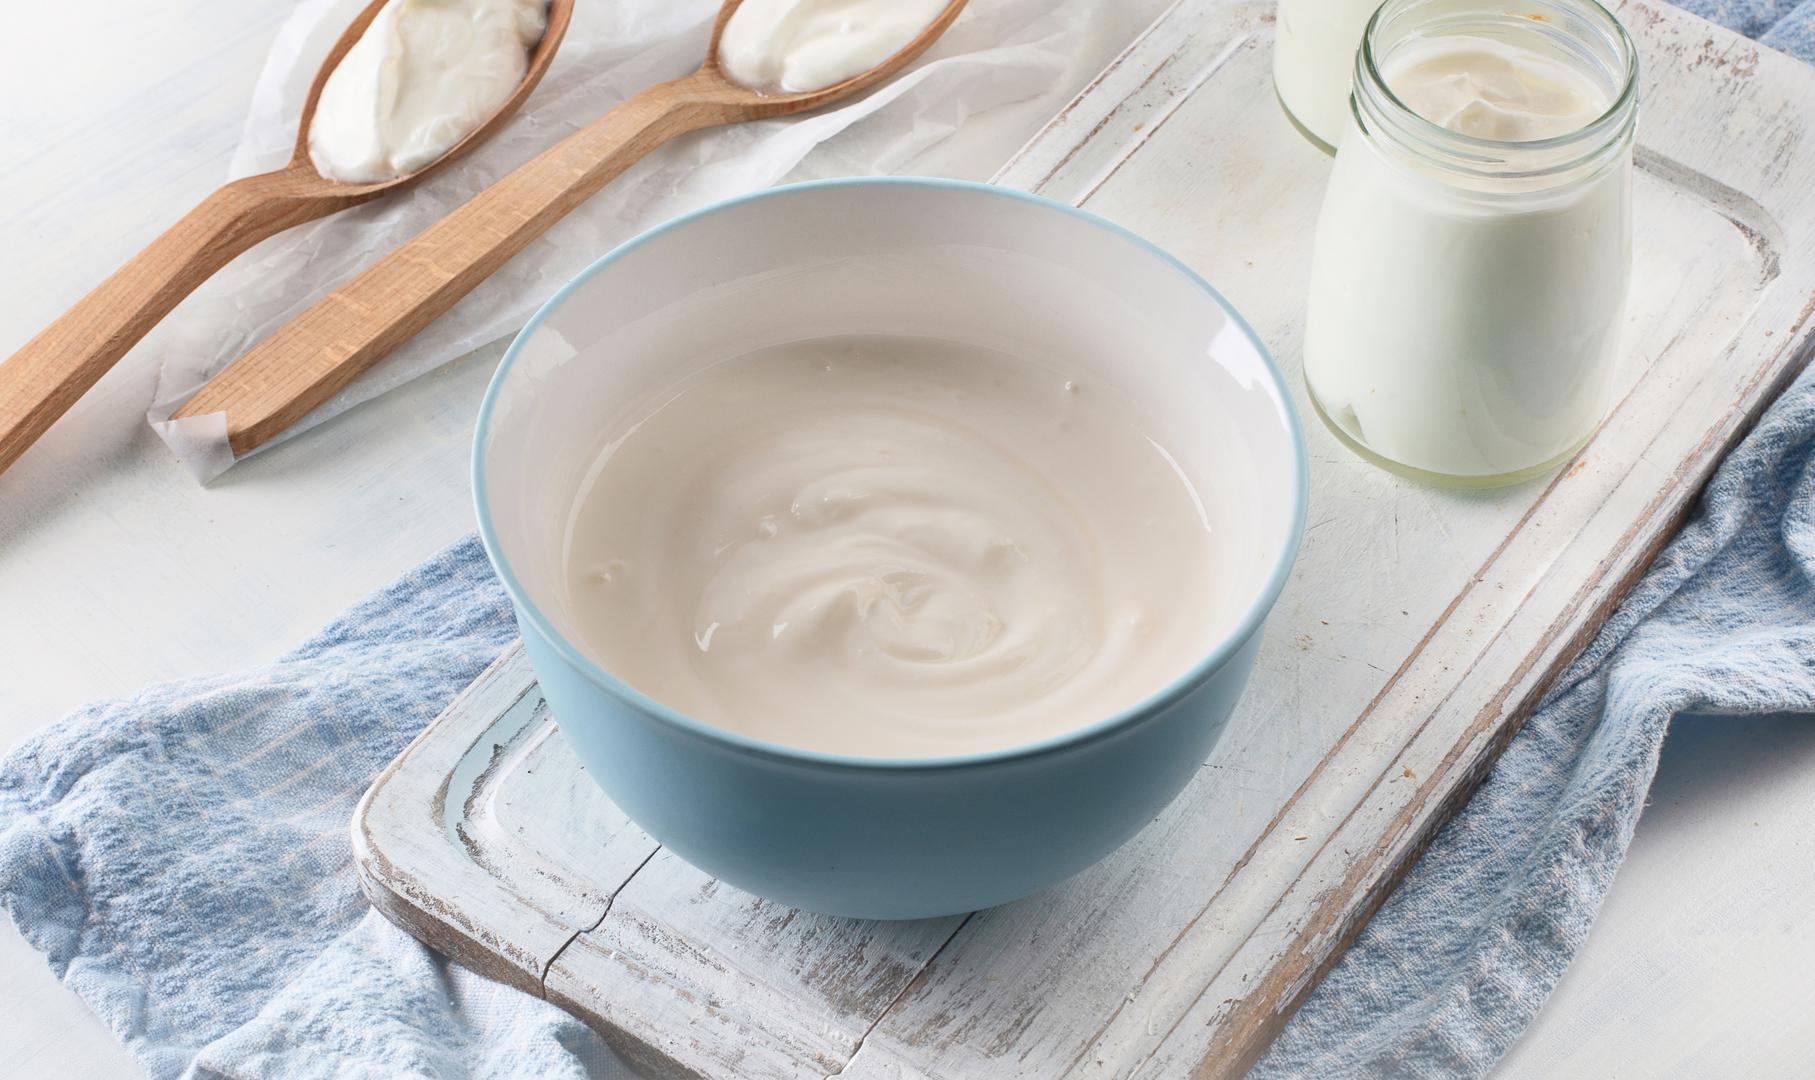 Jogurt: Korištenje jogurta umjesto jaja idealno je za pekarske proizvode gdje je na djelu još jedno sredstvo za dizanje. Pomoći će kod vezivanja i vlage. 1/4 šalice jogurta = 1 jaje